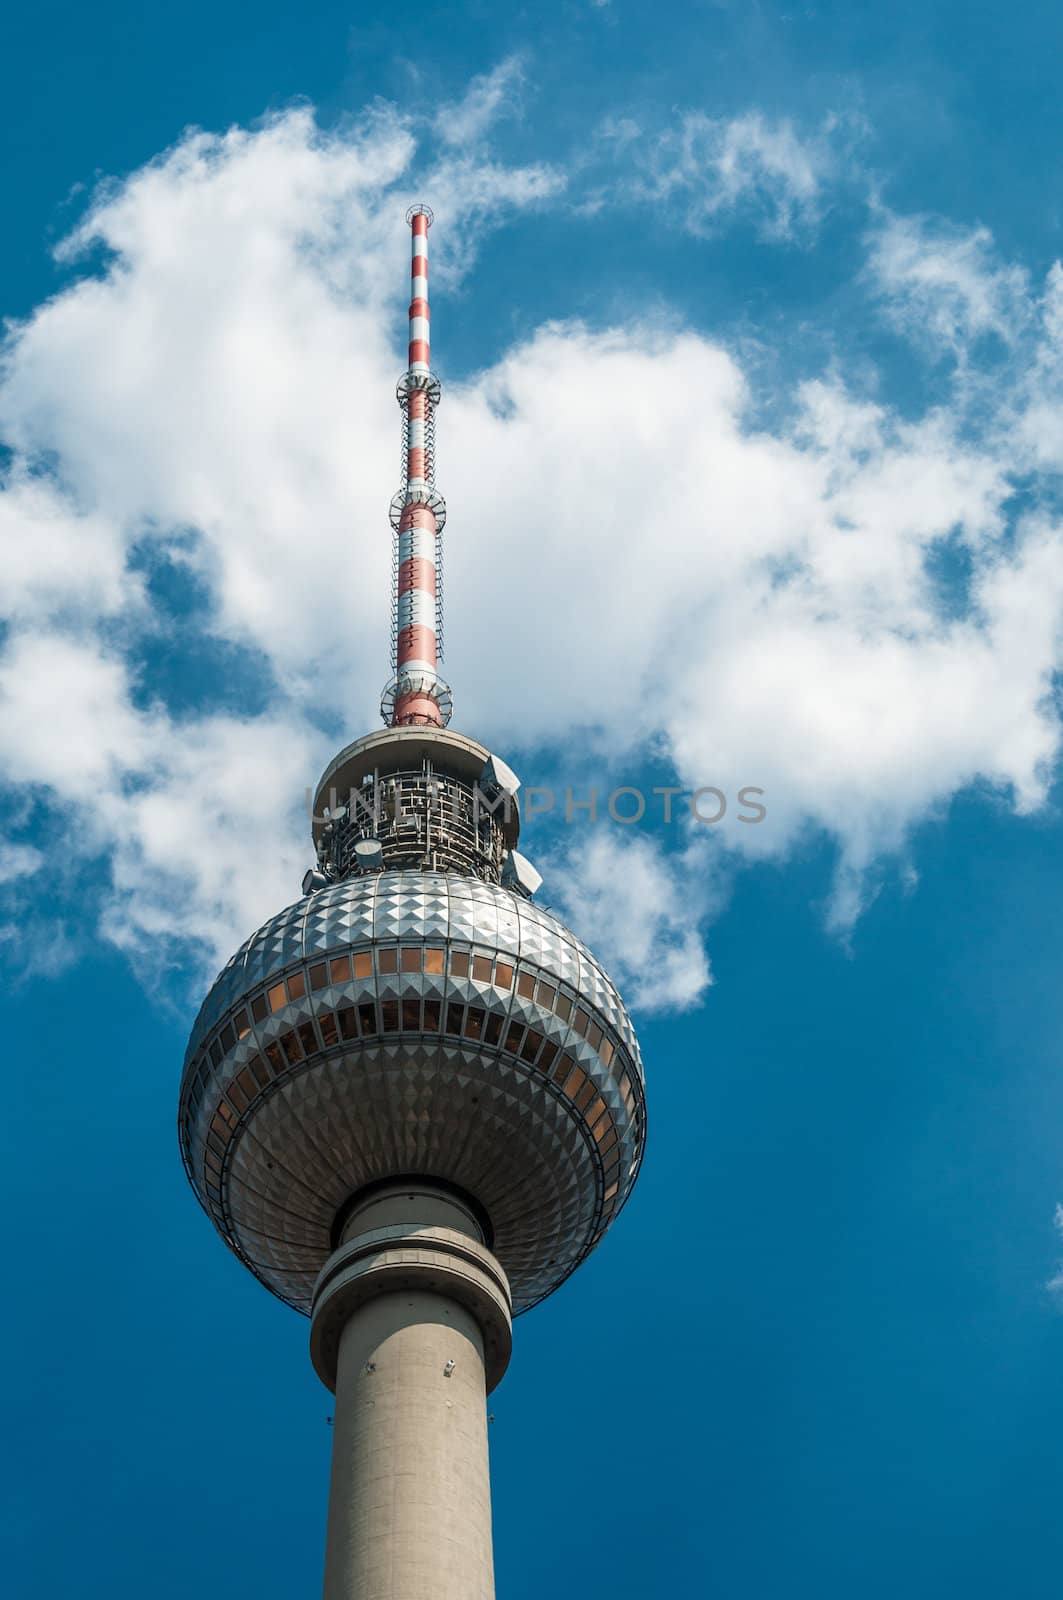 Fernsehturm by Jule_Berlin